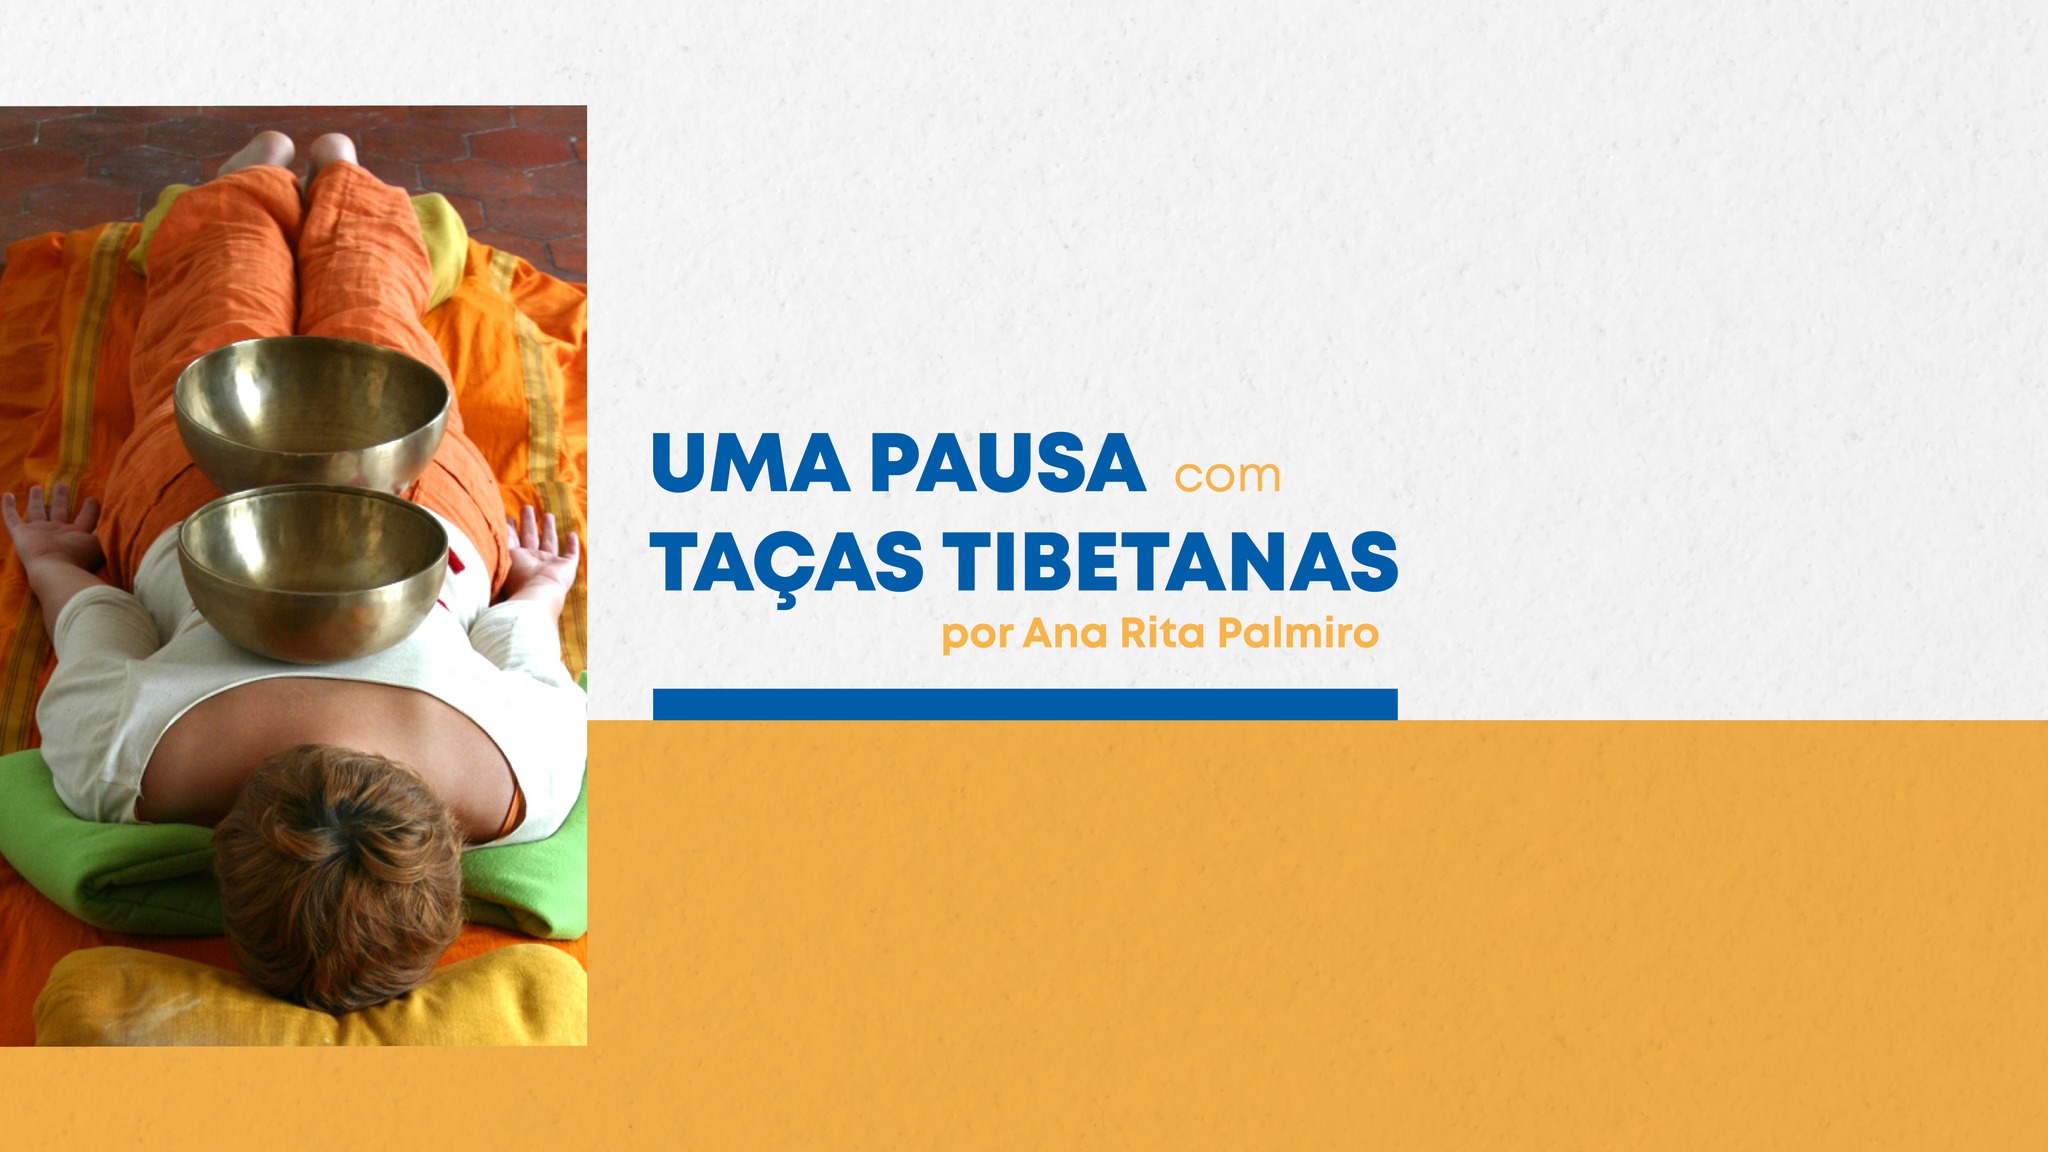 UMA PAUSA COM TAÇAS TIBETANAS por Ana Rita Palmiro